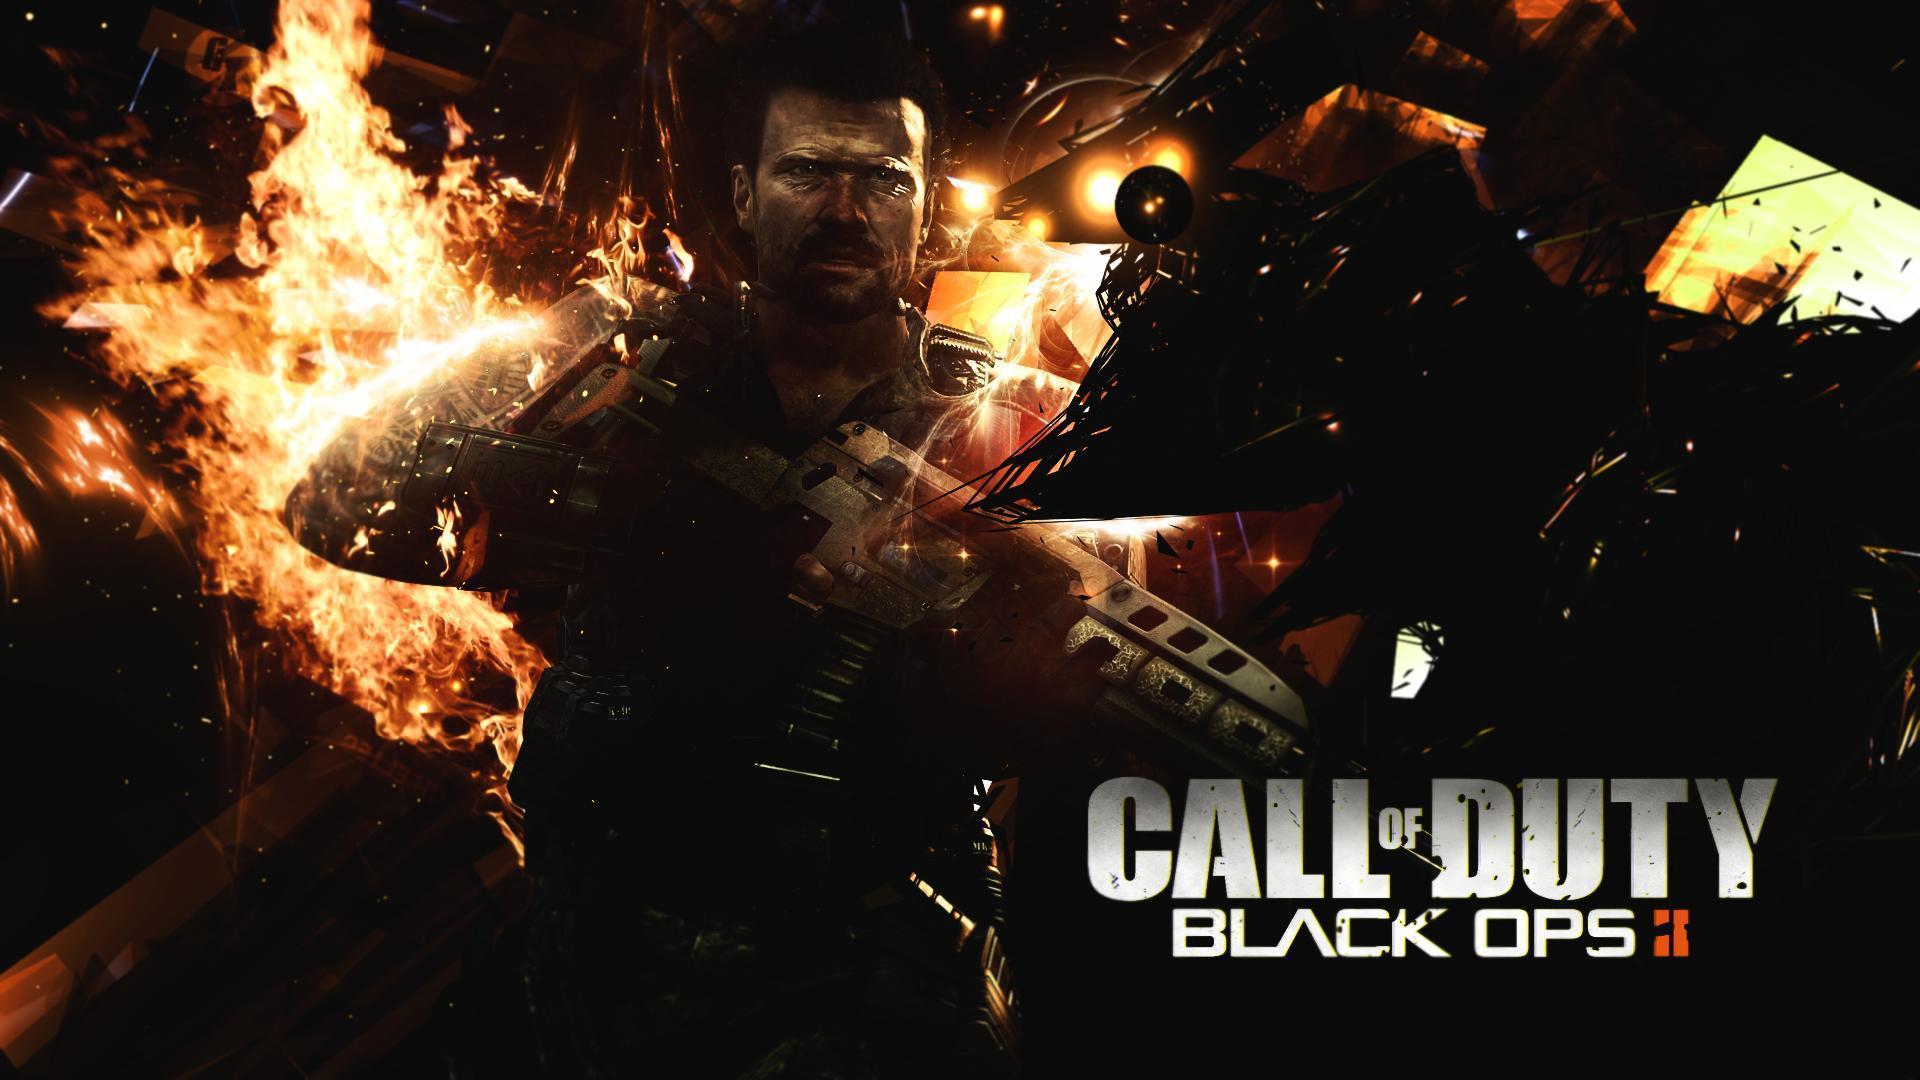 Call of Duty Black Ops 2 Wallpaper en 1080p. HD